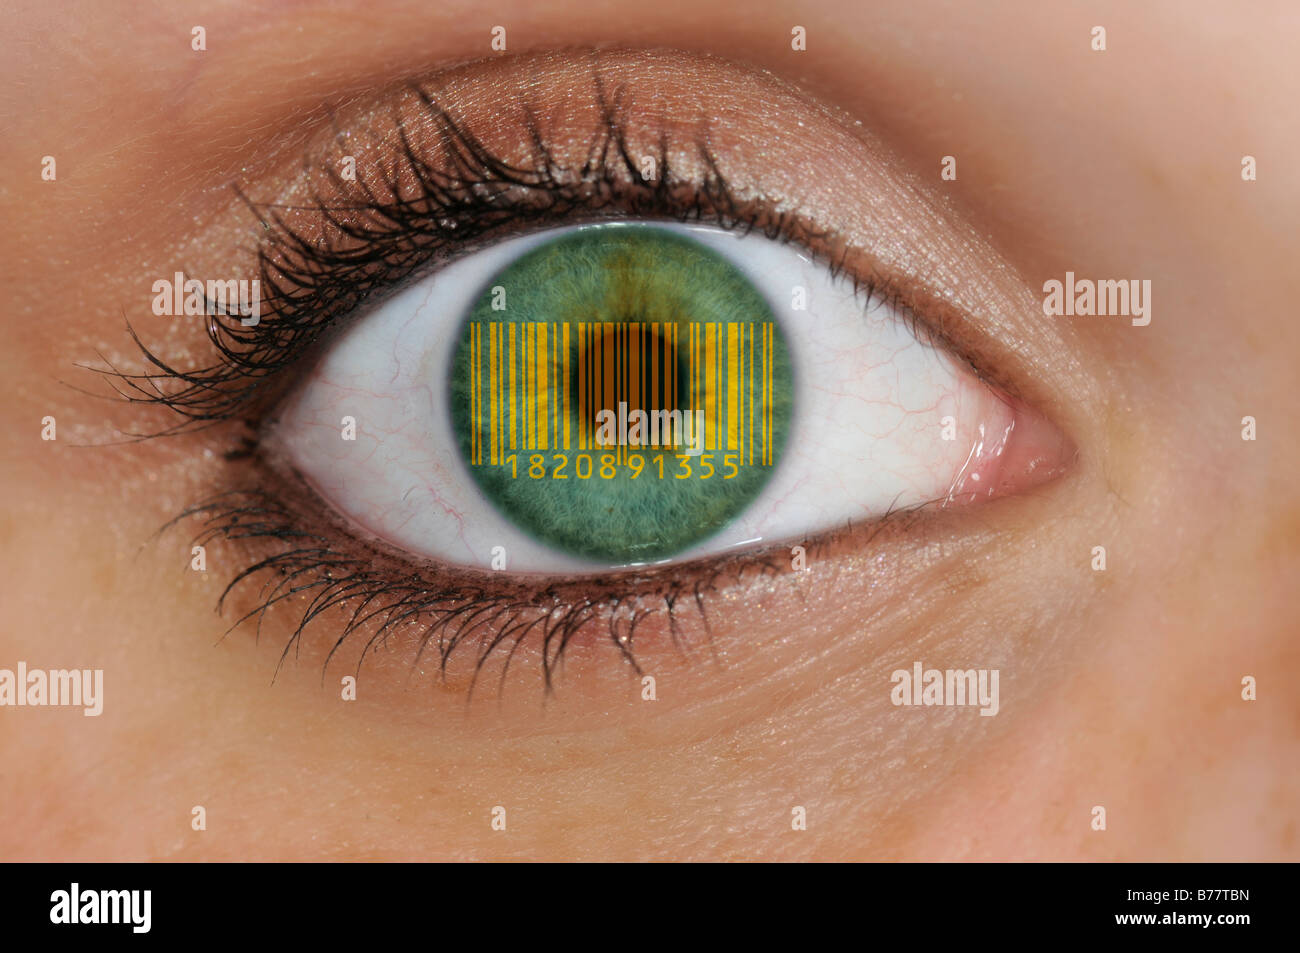 Primer plano de un ojo con EAN, Unión Número de artículo, código de barras en el iris, símbolo de la vigilancia en masa Foto de stock